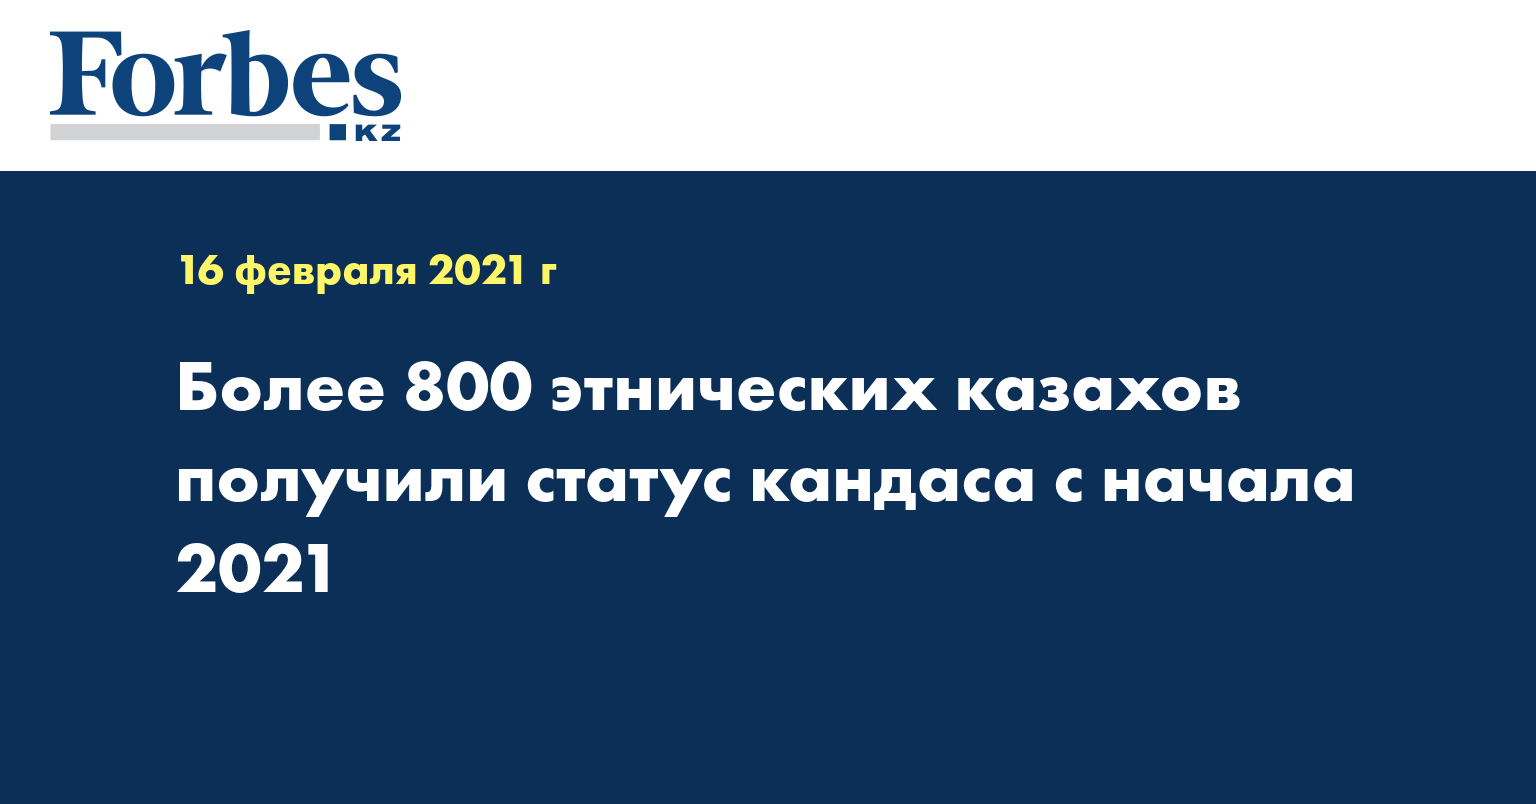 Более 800 этнических казахов получили статус кандаса с начала 2021